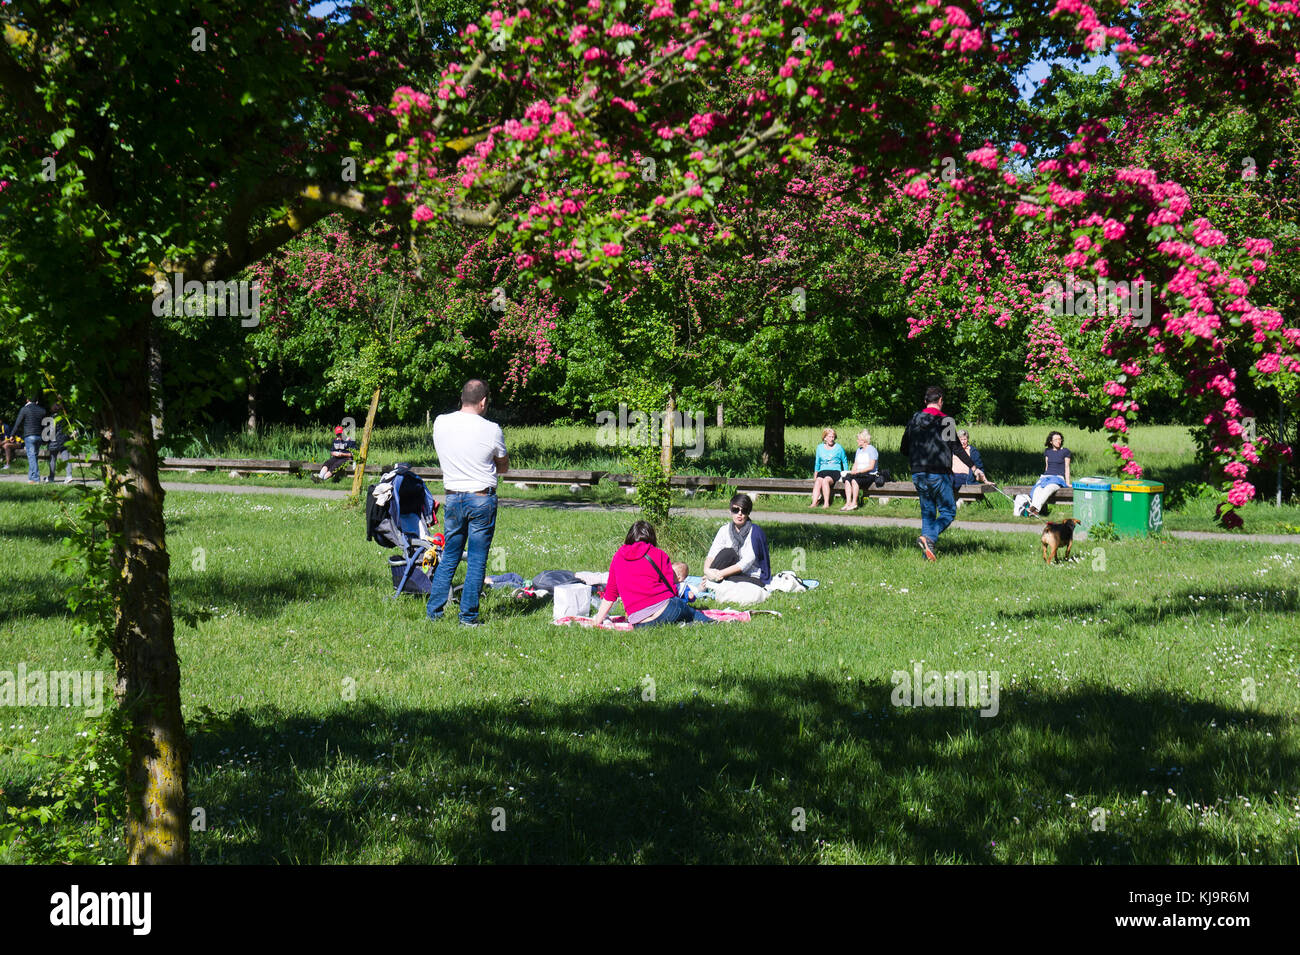 Parco Nord Milano ist ein Metropolitan suburban Park am nördlichen Stadtrand von Mailand. Klassifiziert als Regional, es erstreckt sich zwischen den Städten Mailand, Bresso, Cusano Milanino, Ausfahrt Cormano, Cinisello Balsamo, Sesto San Giovanni. Stockfoto